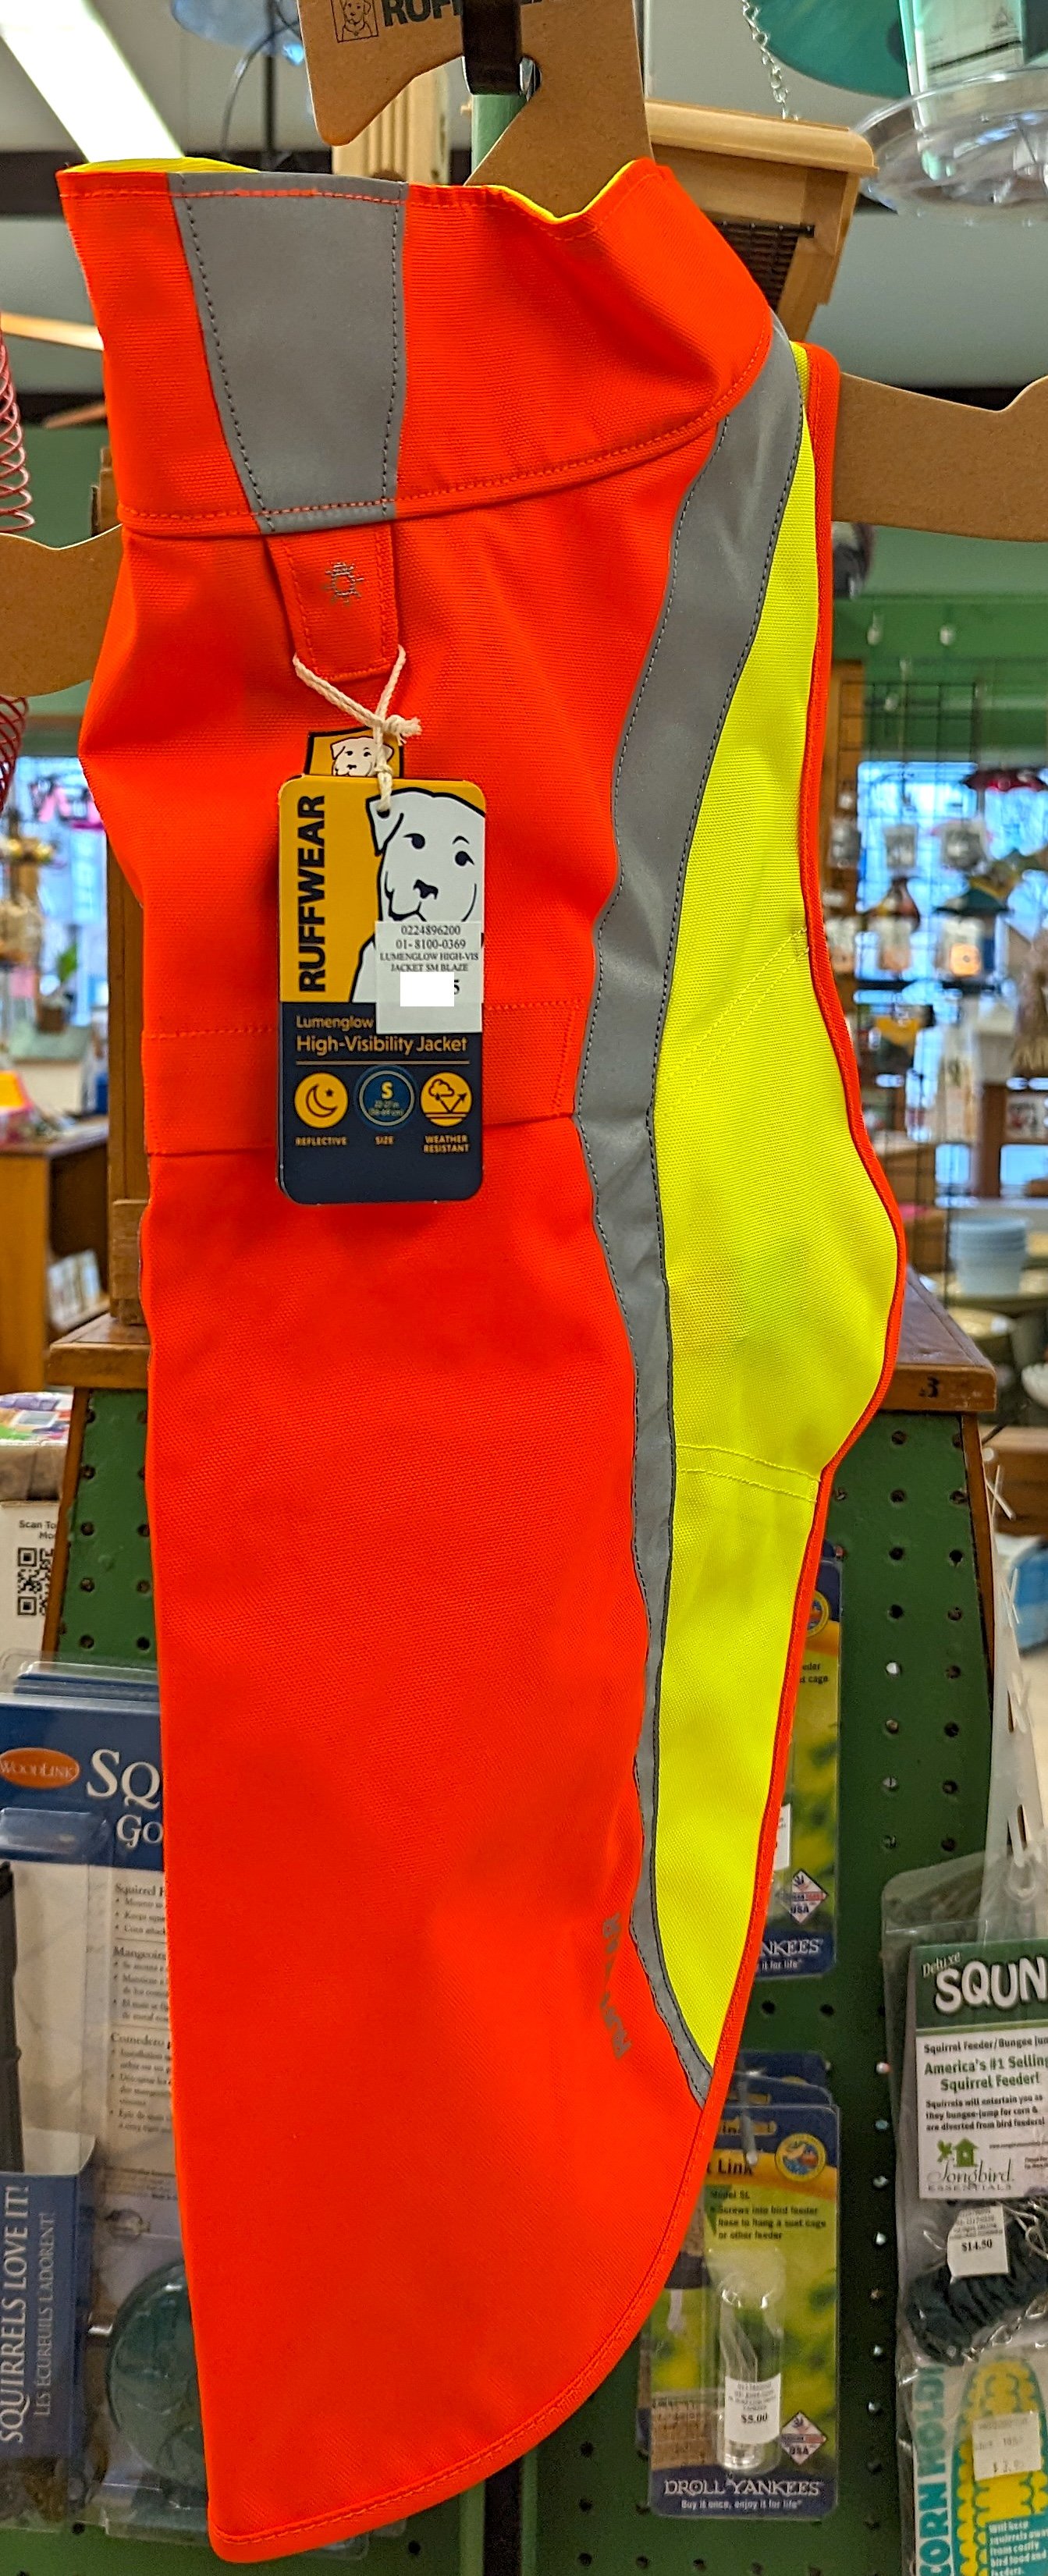 Lumenglow Safety Jacket.jpg